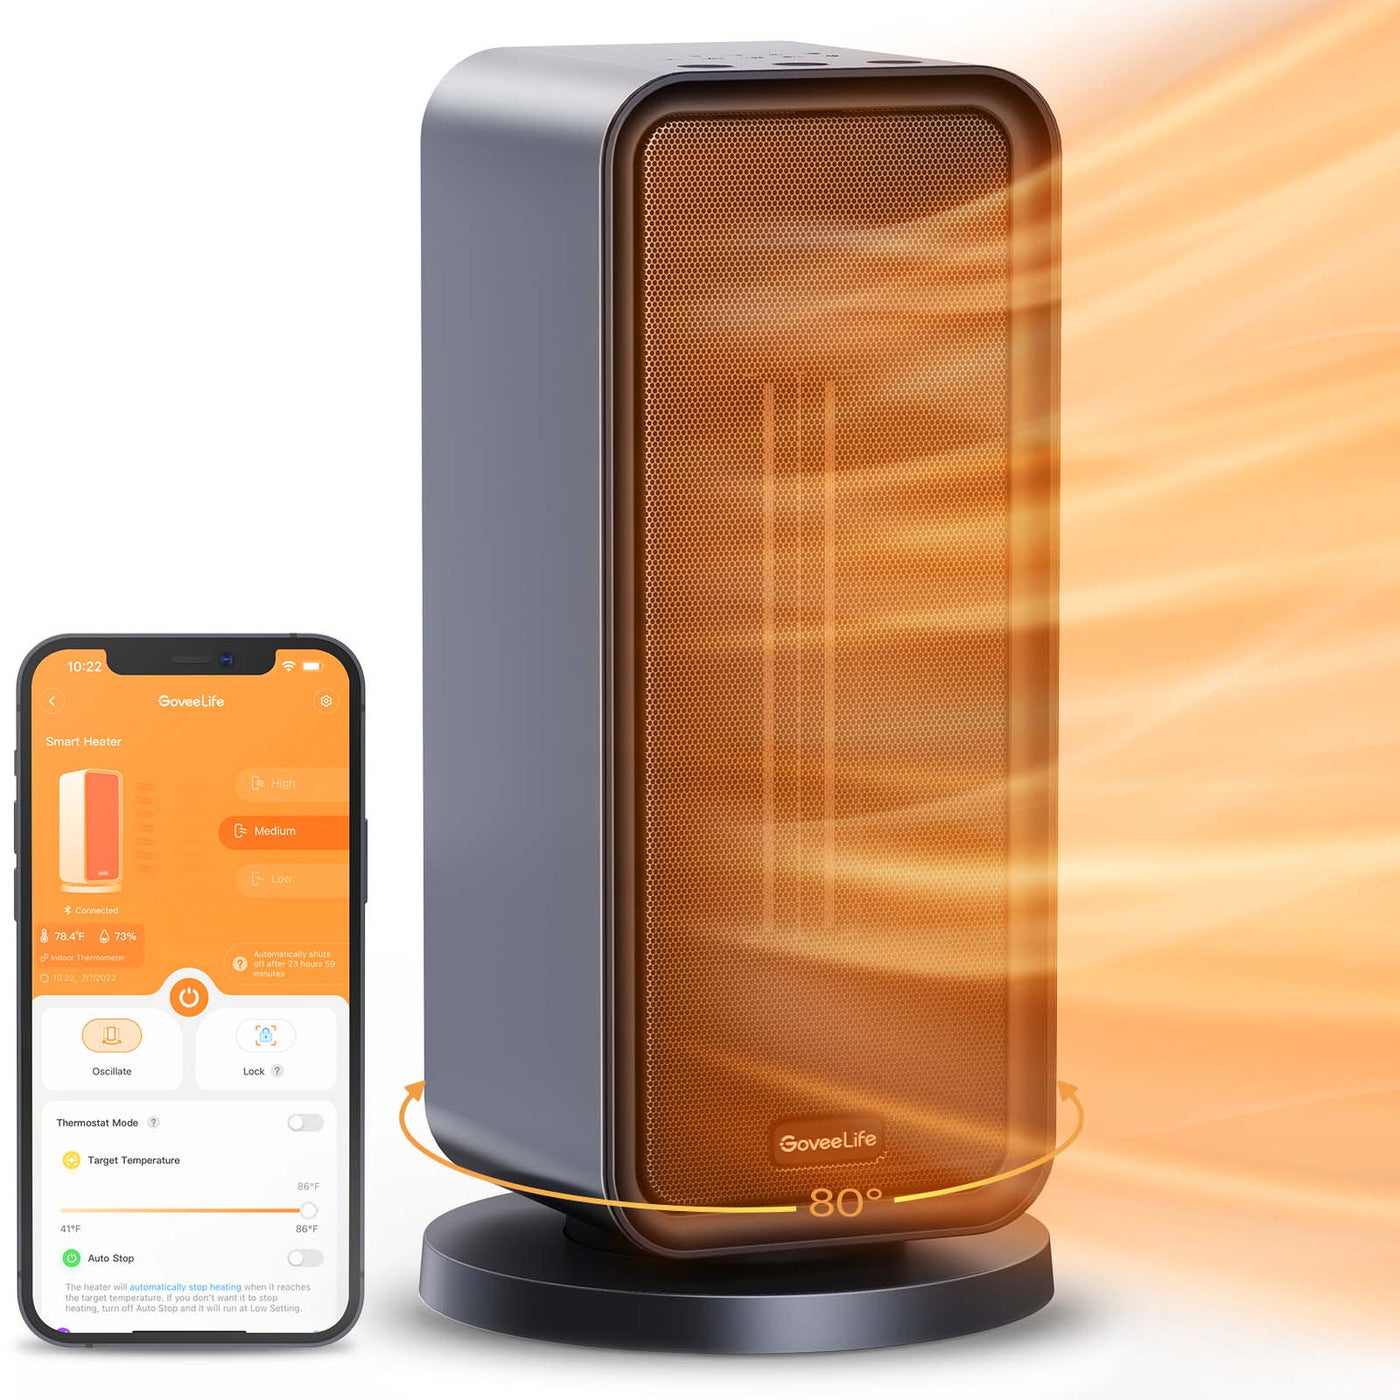 GoveeLife Smart Space Heater